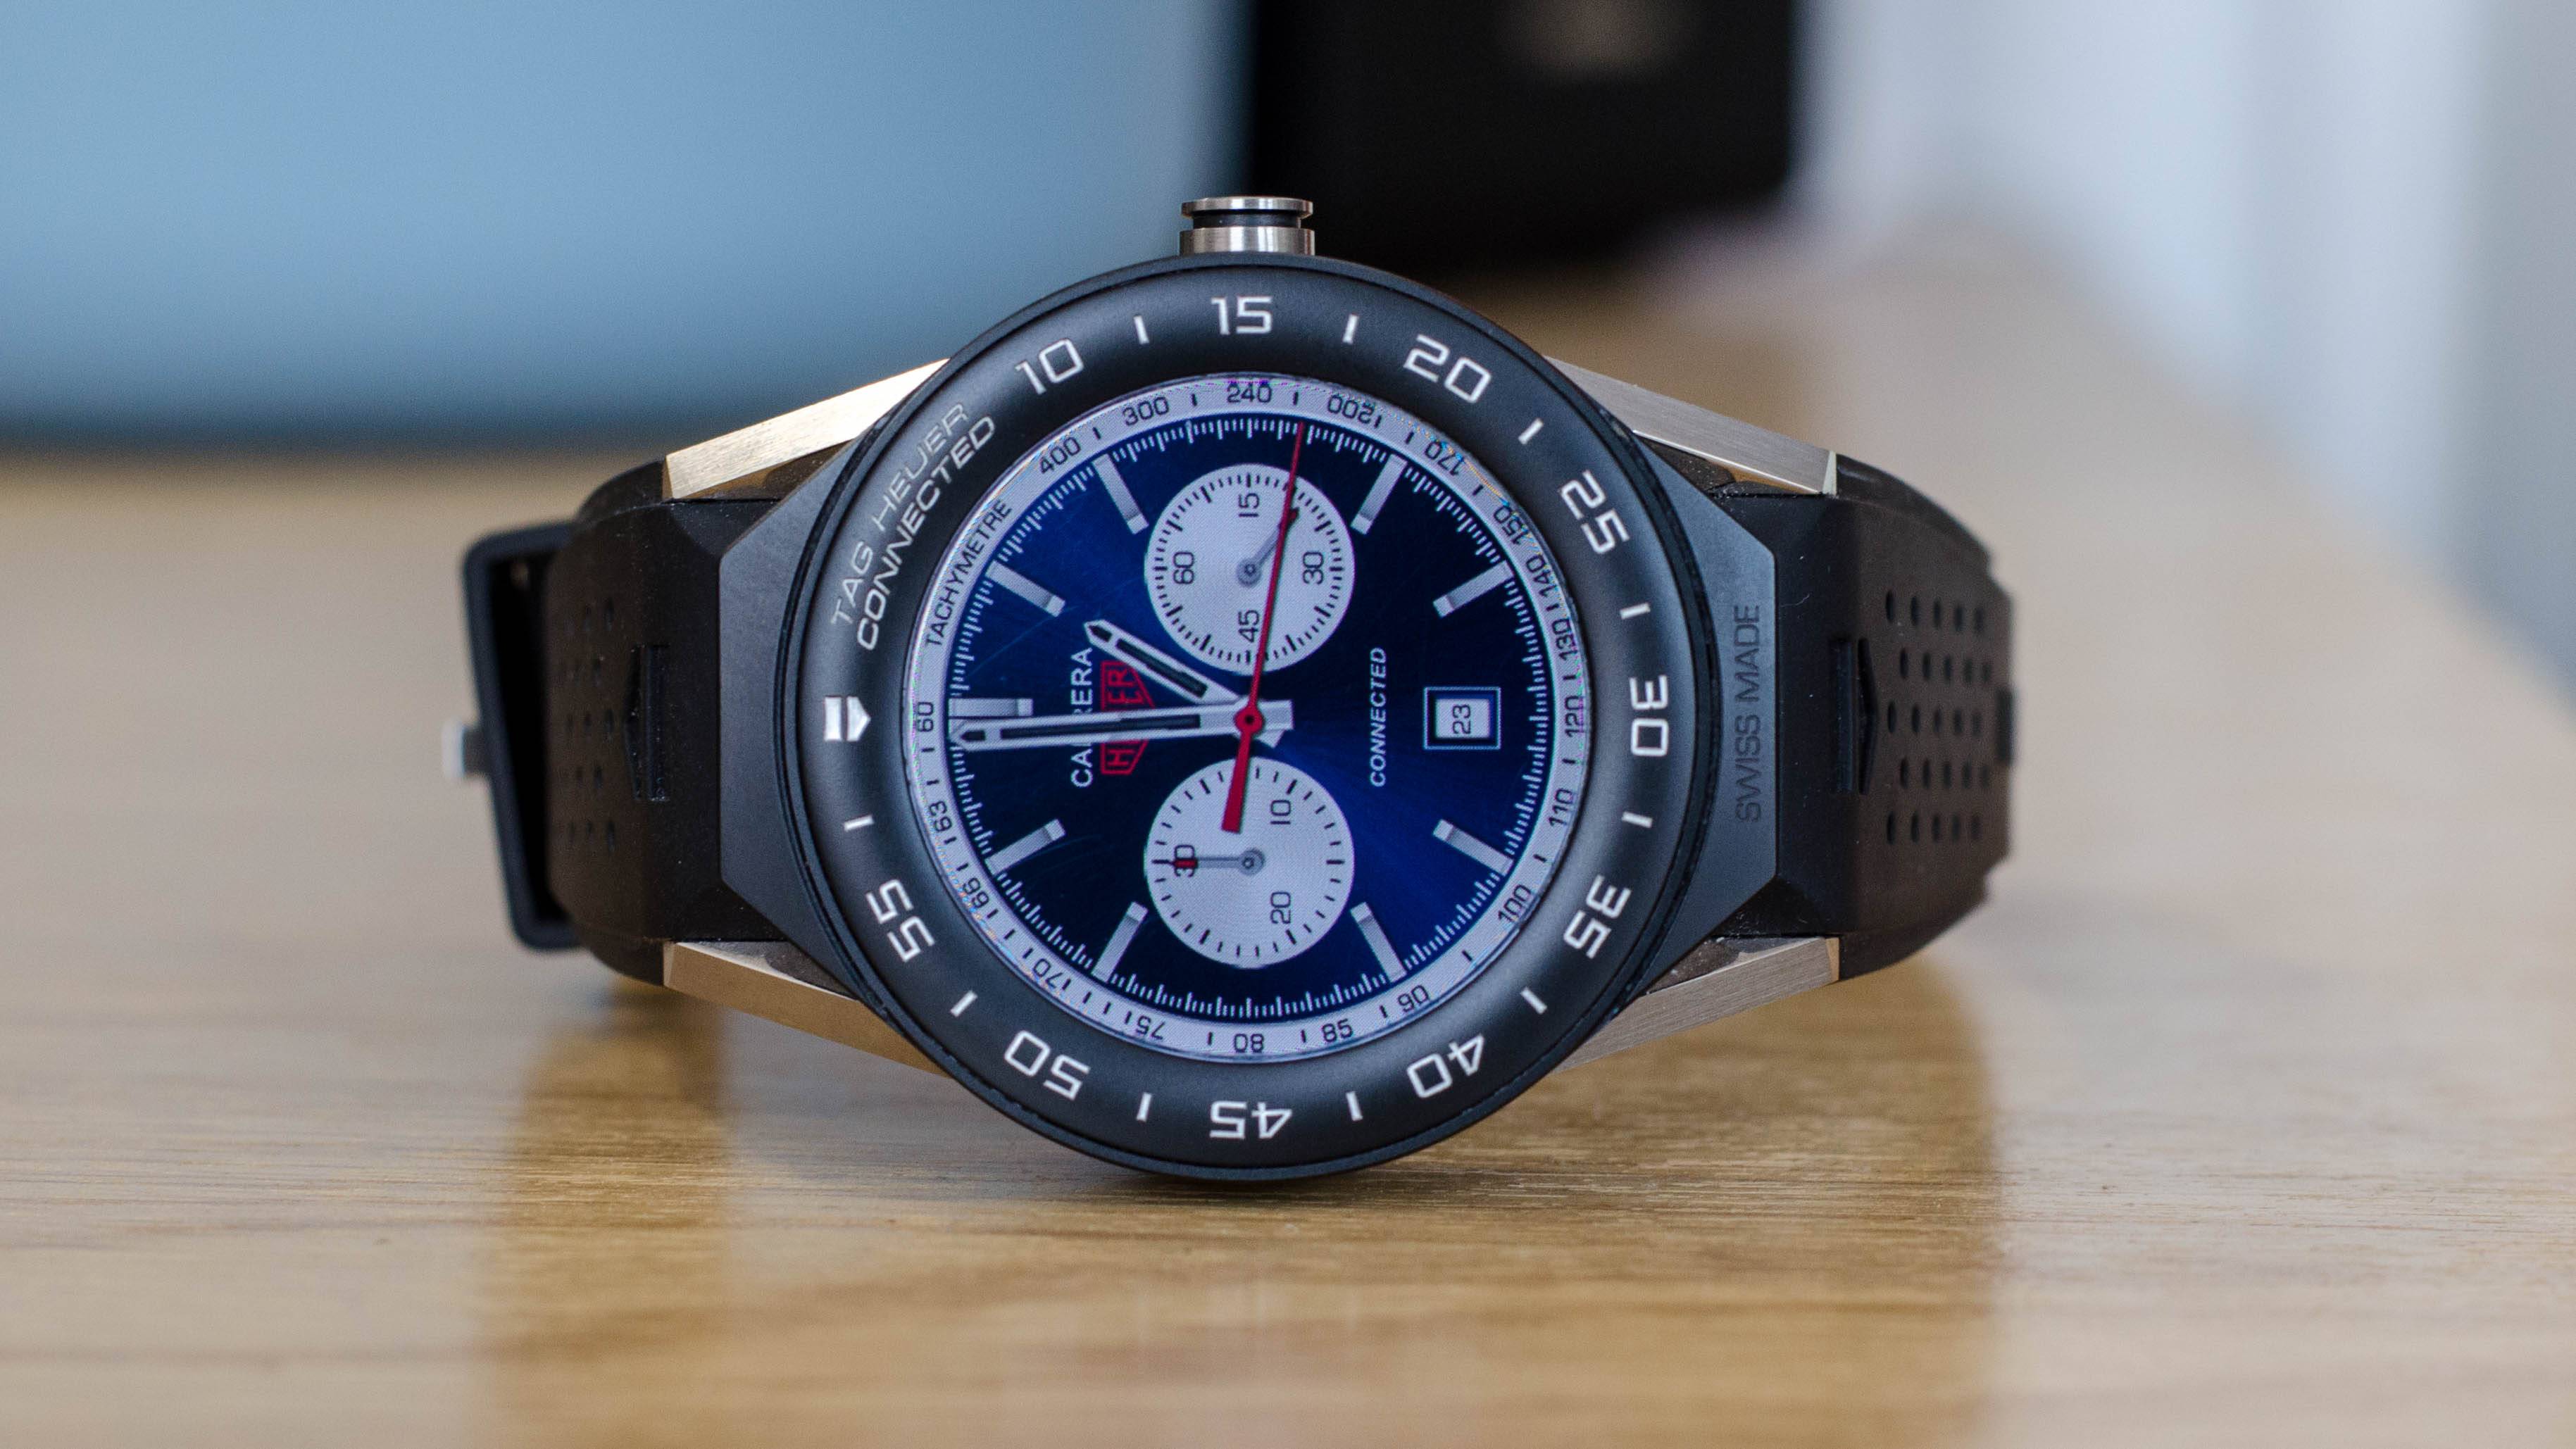 Tag heuer connected - как "впарить" умные часы за 200.000 рублей.. или очень странный релиз от часового производителя | мой часовой блог | дзен